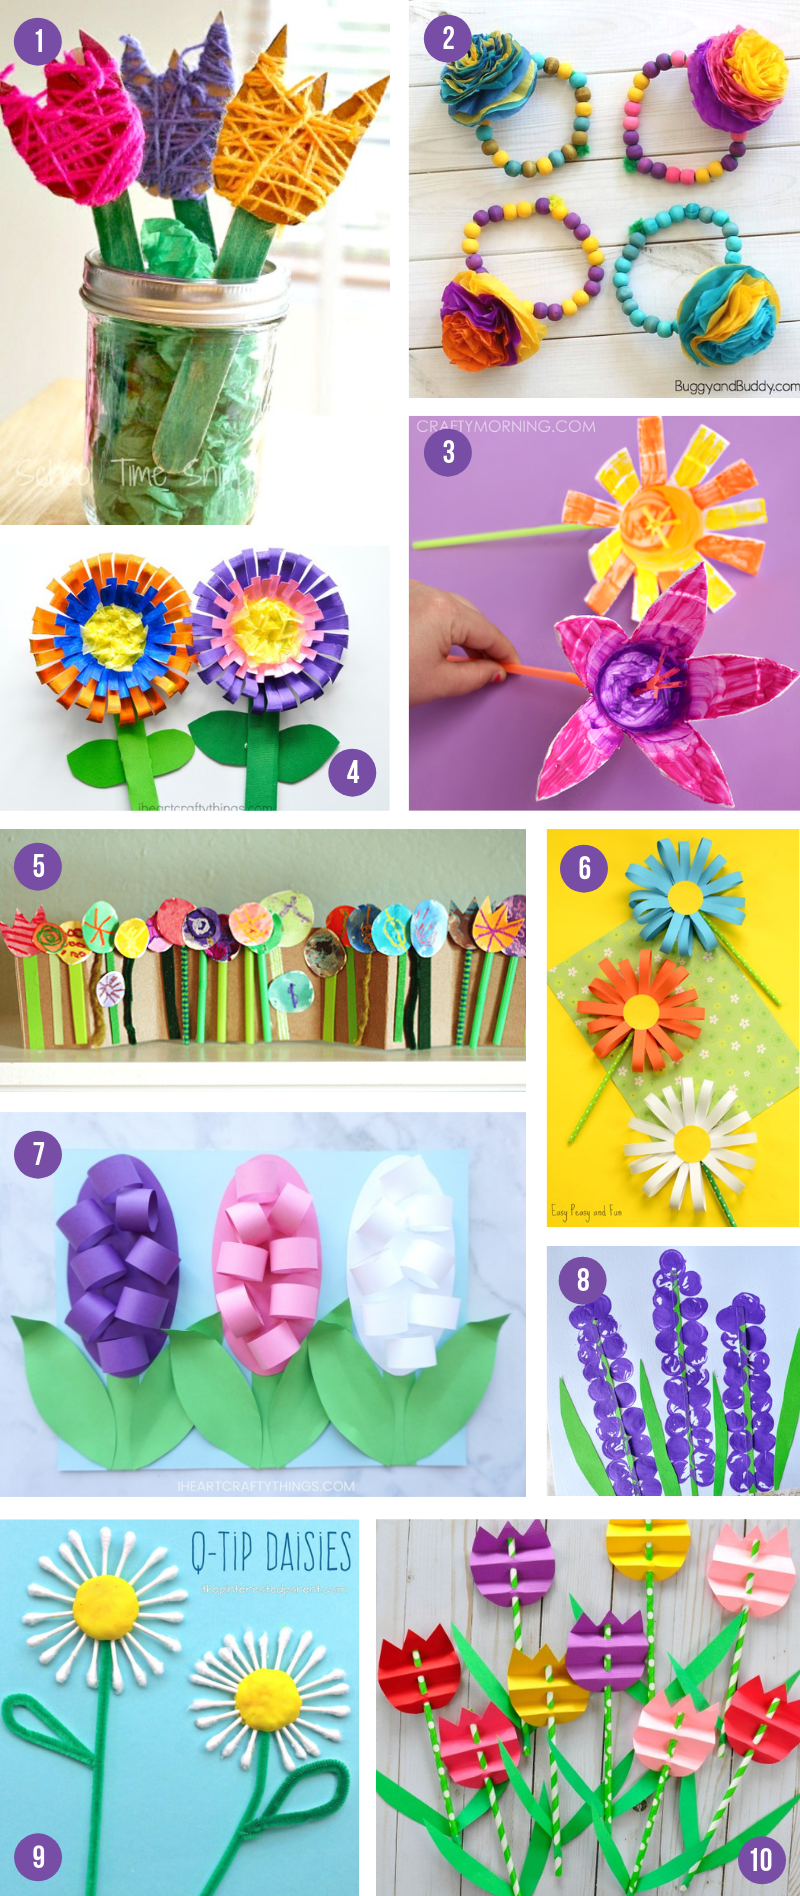 19 simple crafts kindergarten ideas